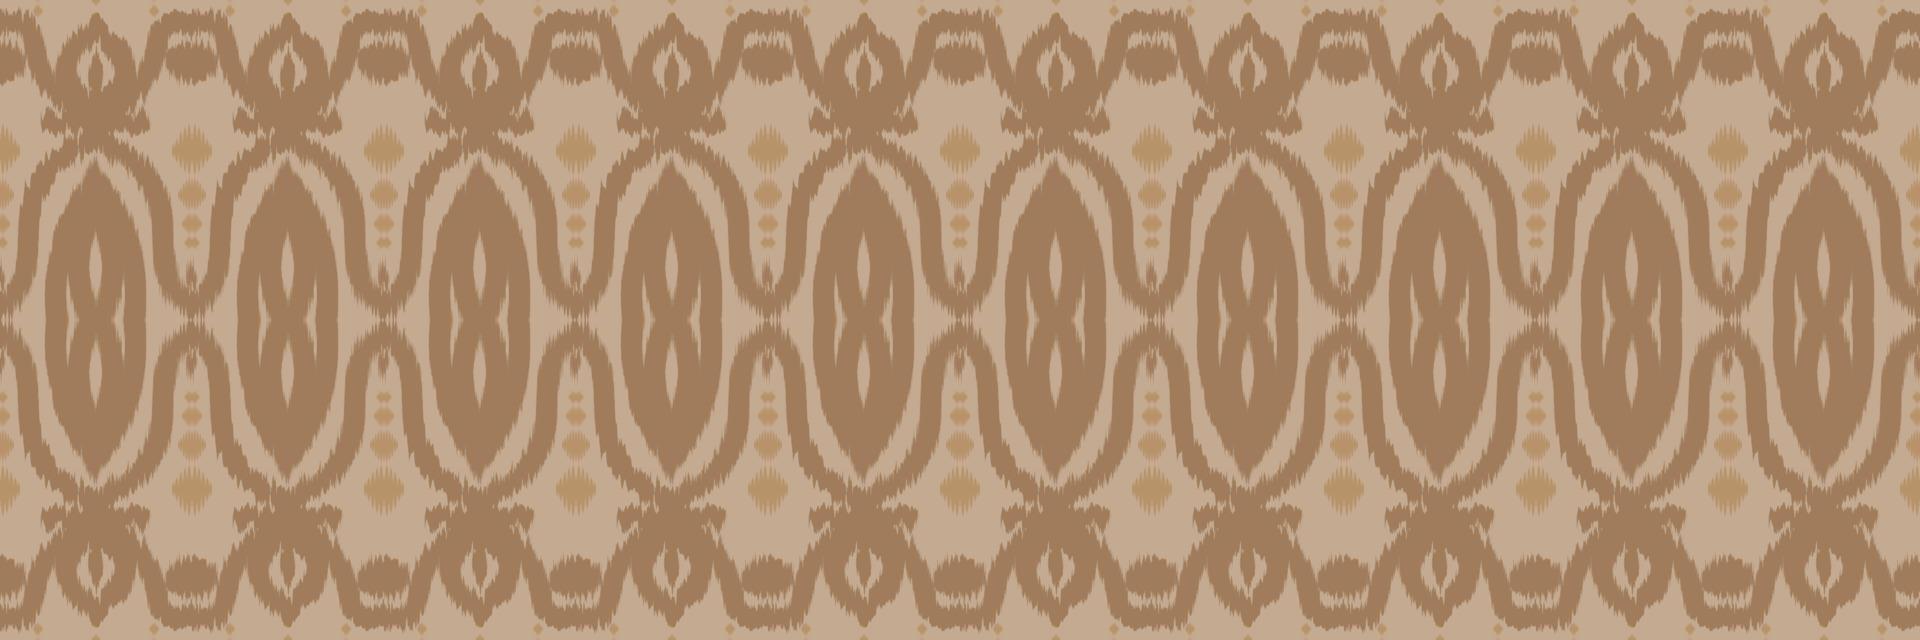 etnico ikat vettore batik tessile senza soluzione di continuità modello digitale vettore design per Stampa saree Kurti Borneo tessuto confine spazzola simboli campioni cotone